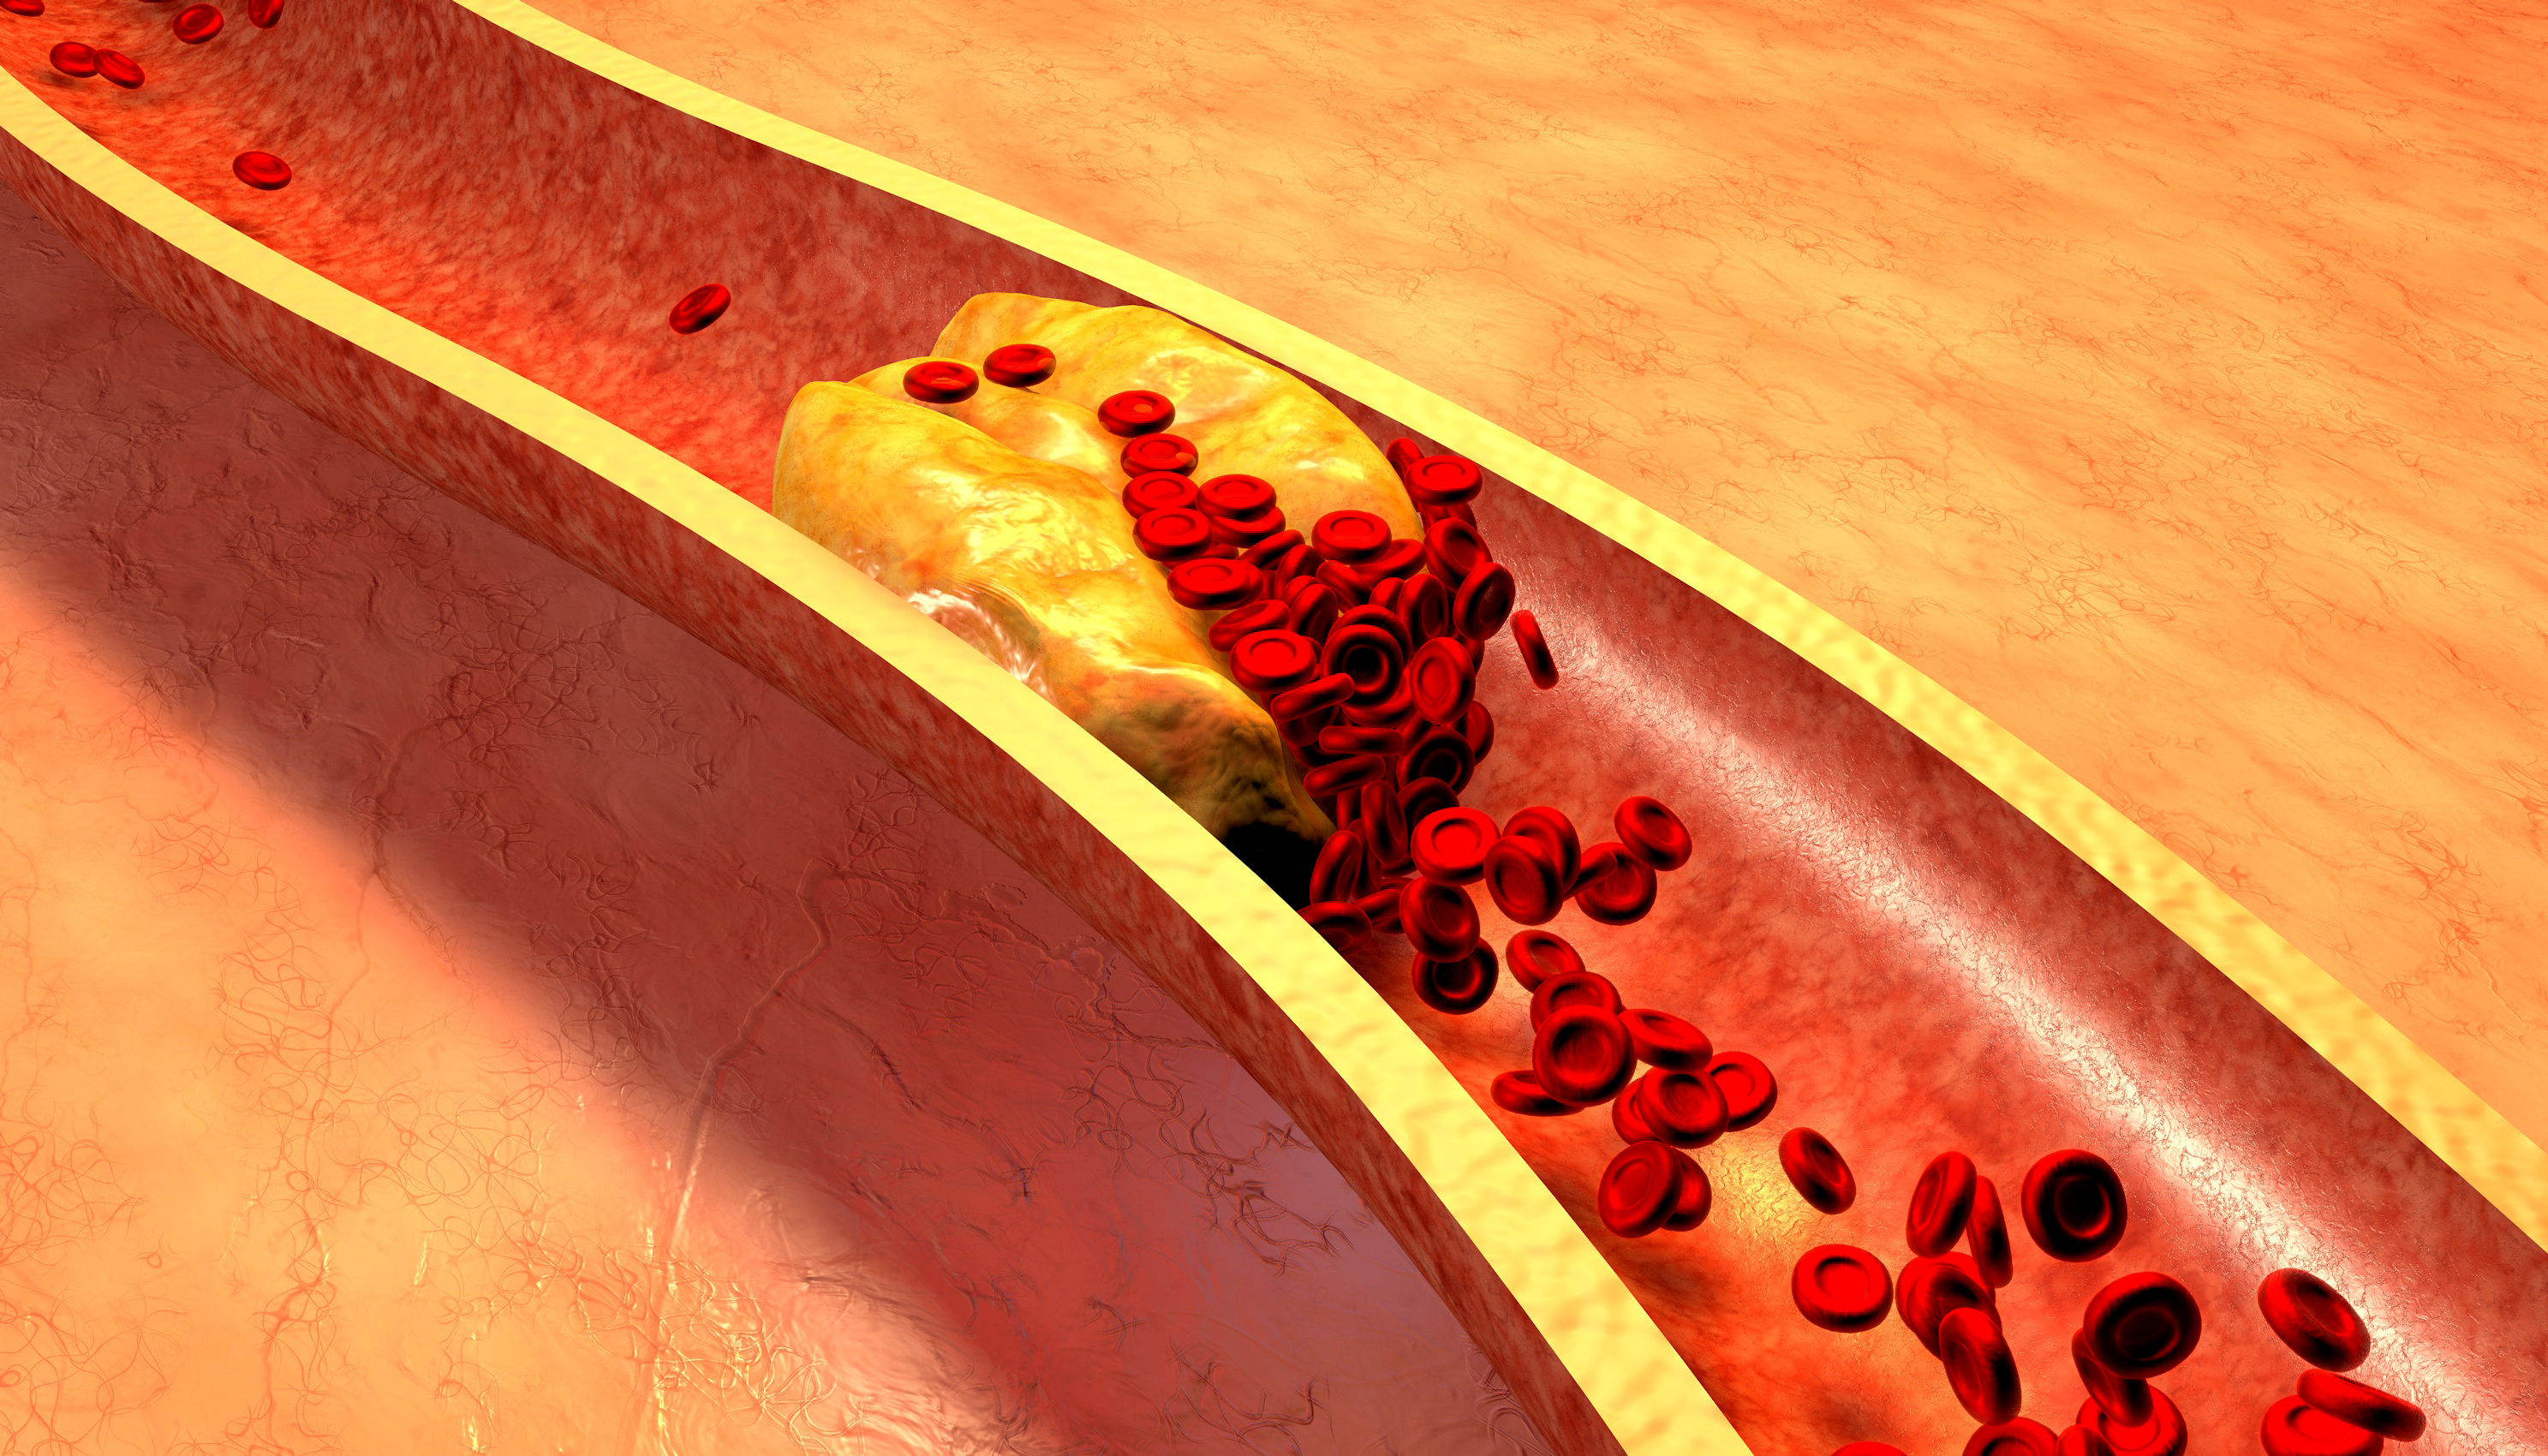 L’accumulation de matière grasse dans les artères peut entraîner leur rétrécissement ou leur blocage, provoquant une pathologie connue sous le nom d’athérosclérose (Source : AdobeStock_79614760)